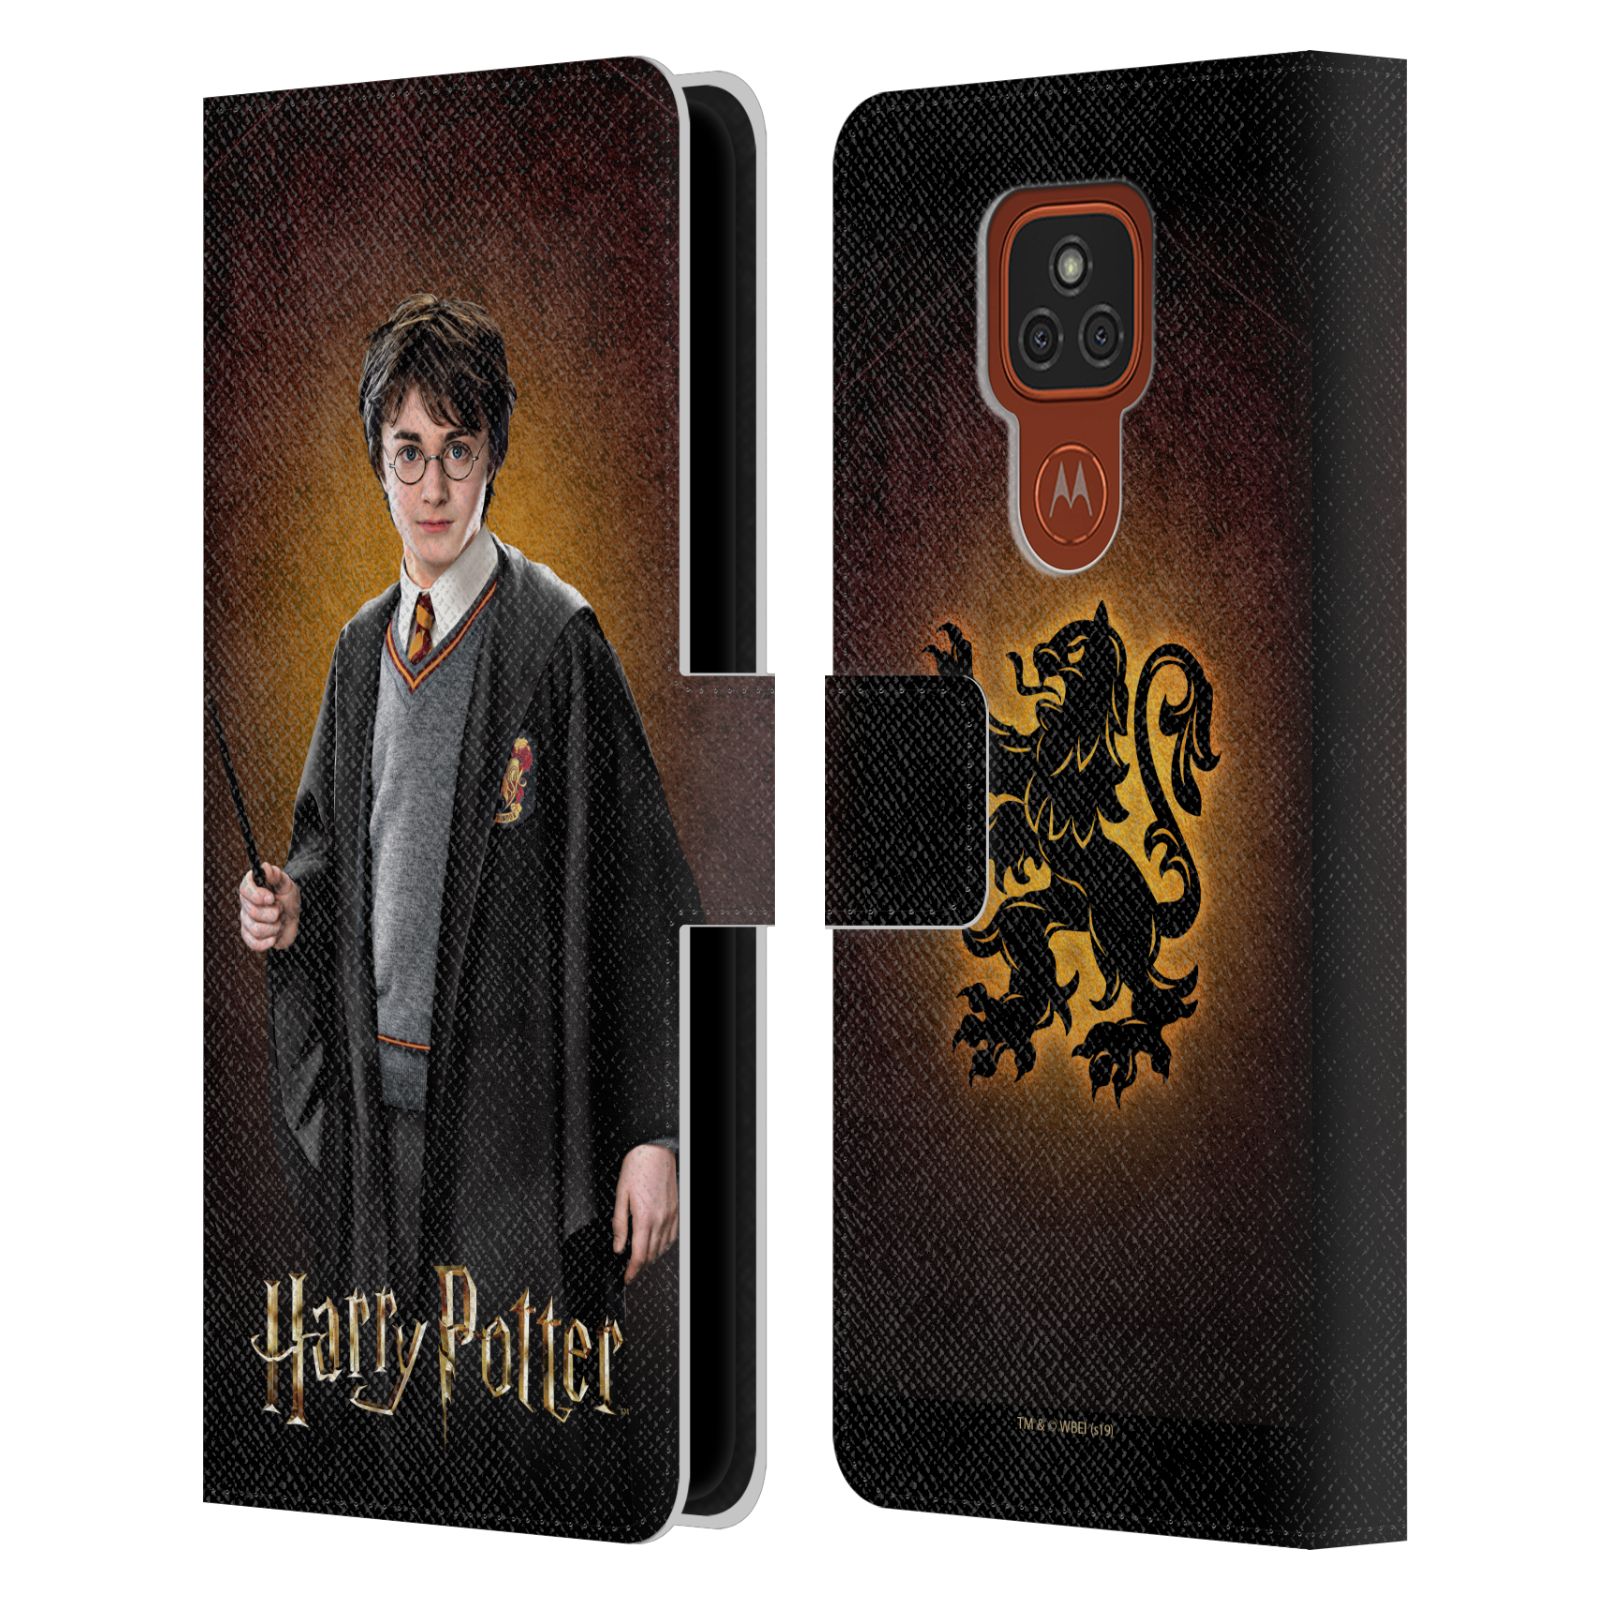 Pouzdro na mobil Motorola Moto E7 Plus - HEAD CASE - Harry Potter - Harry Potter portrét